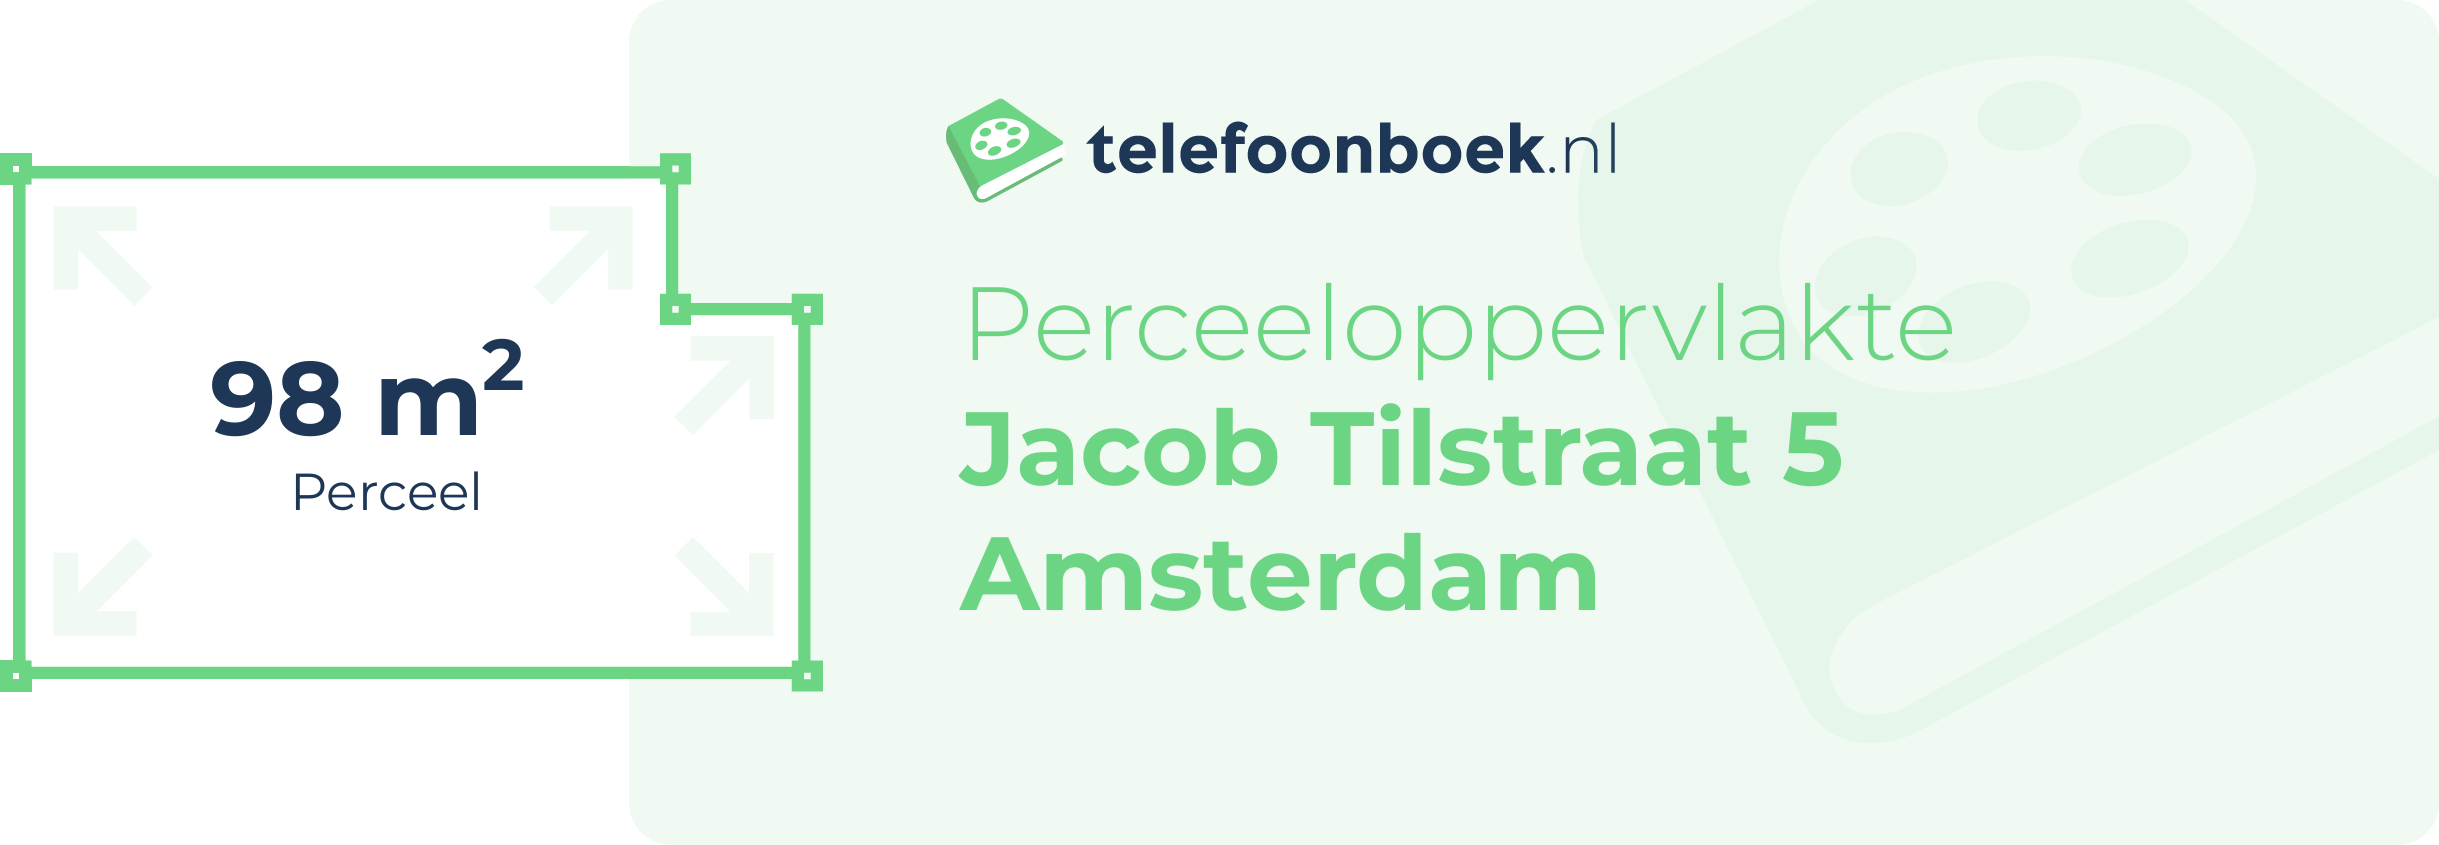 Perceeloppervlakte Jacob Tilstraat 5 Amsterdam